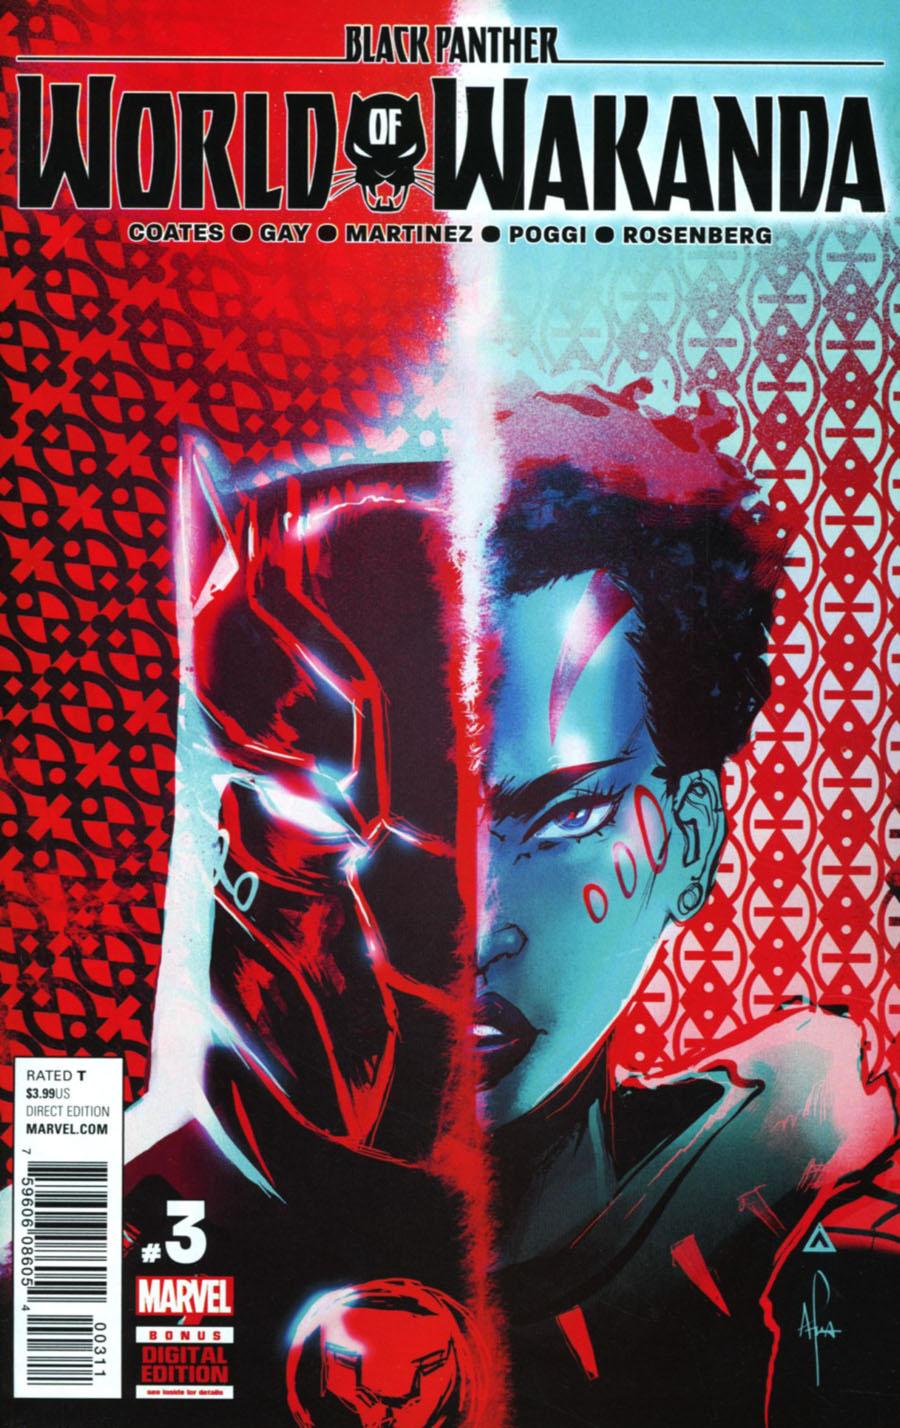 Black Panther World Of Wakanda Vol. 1 #3